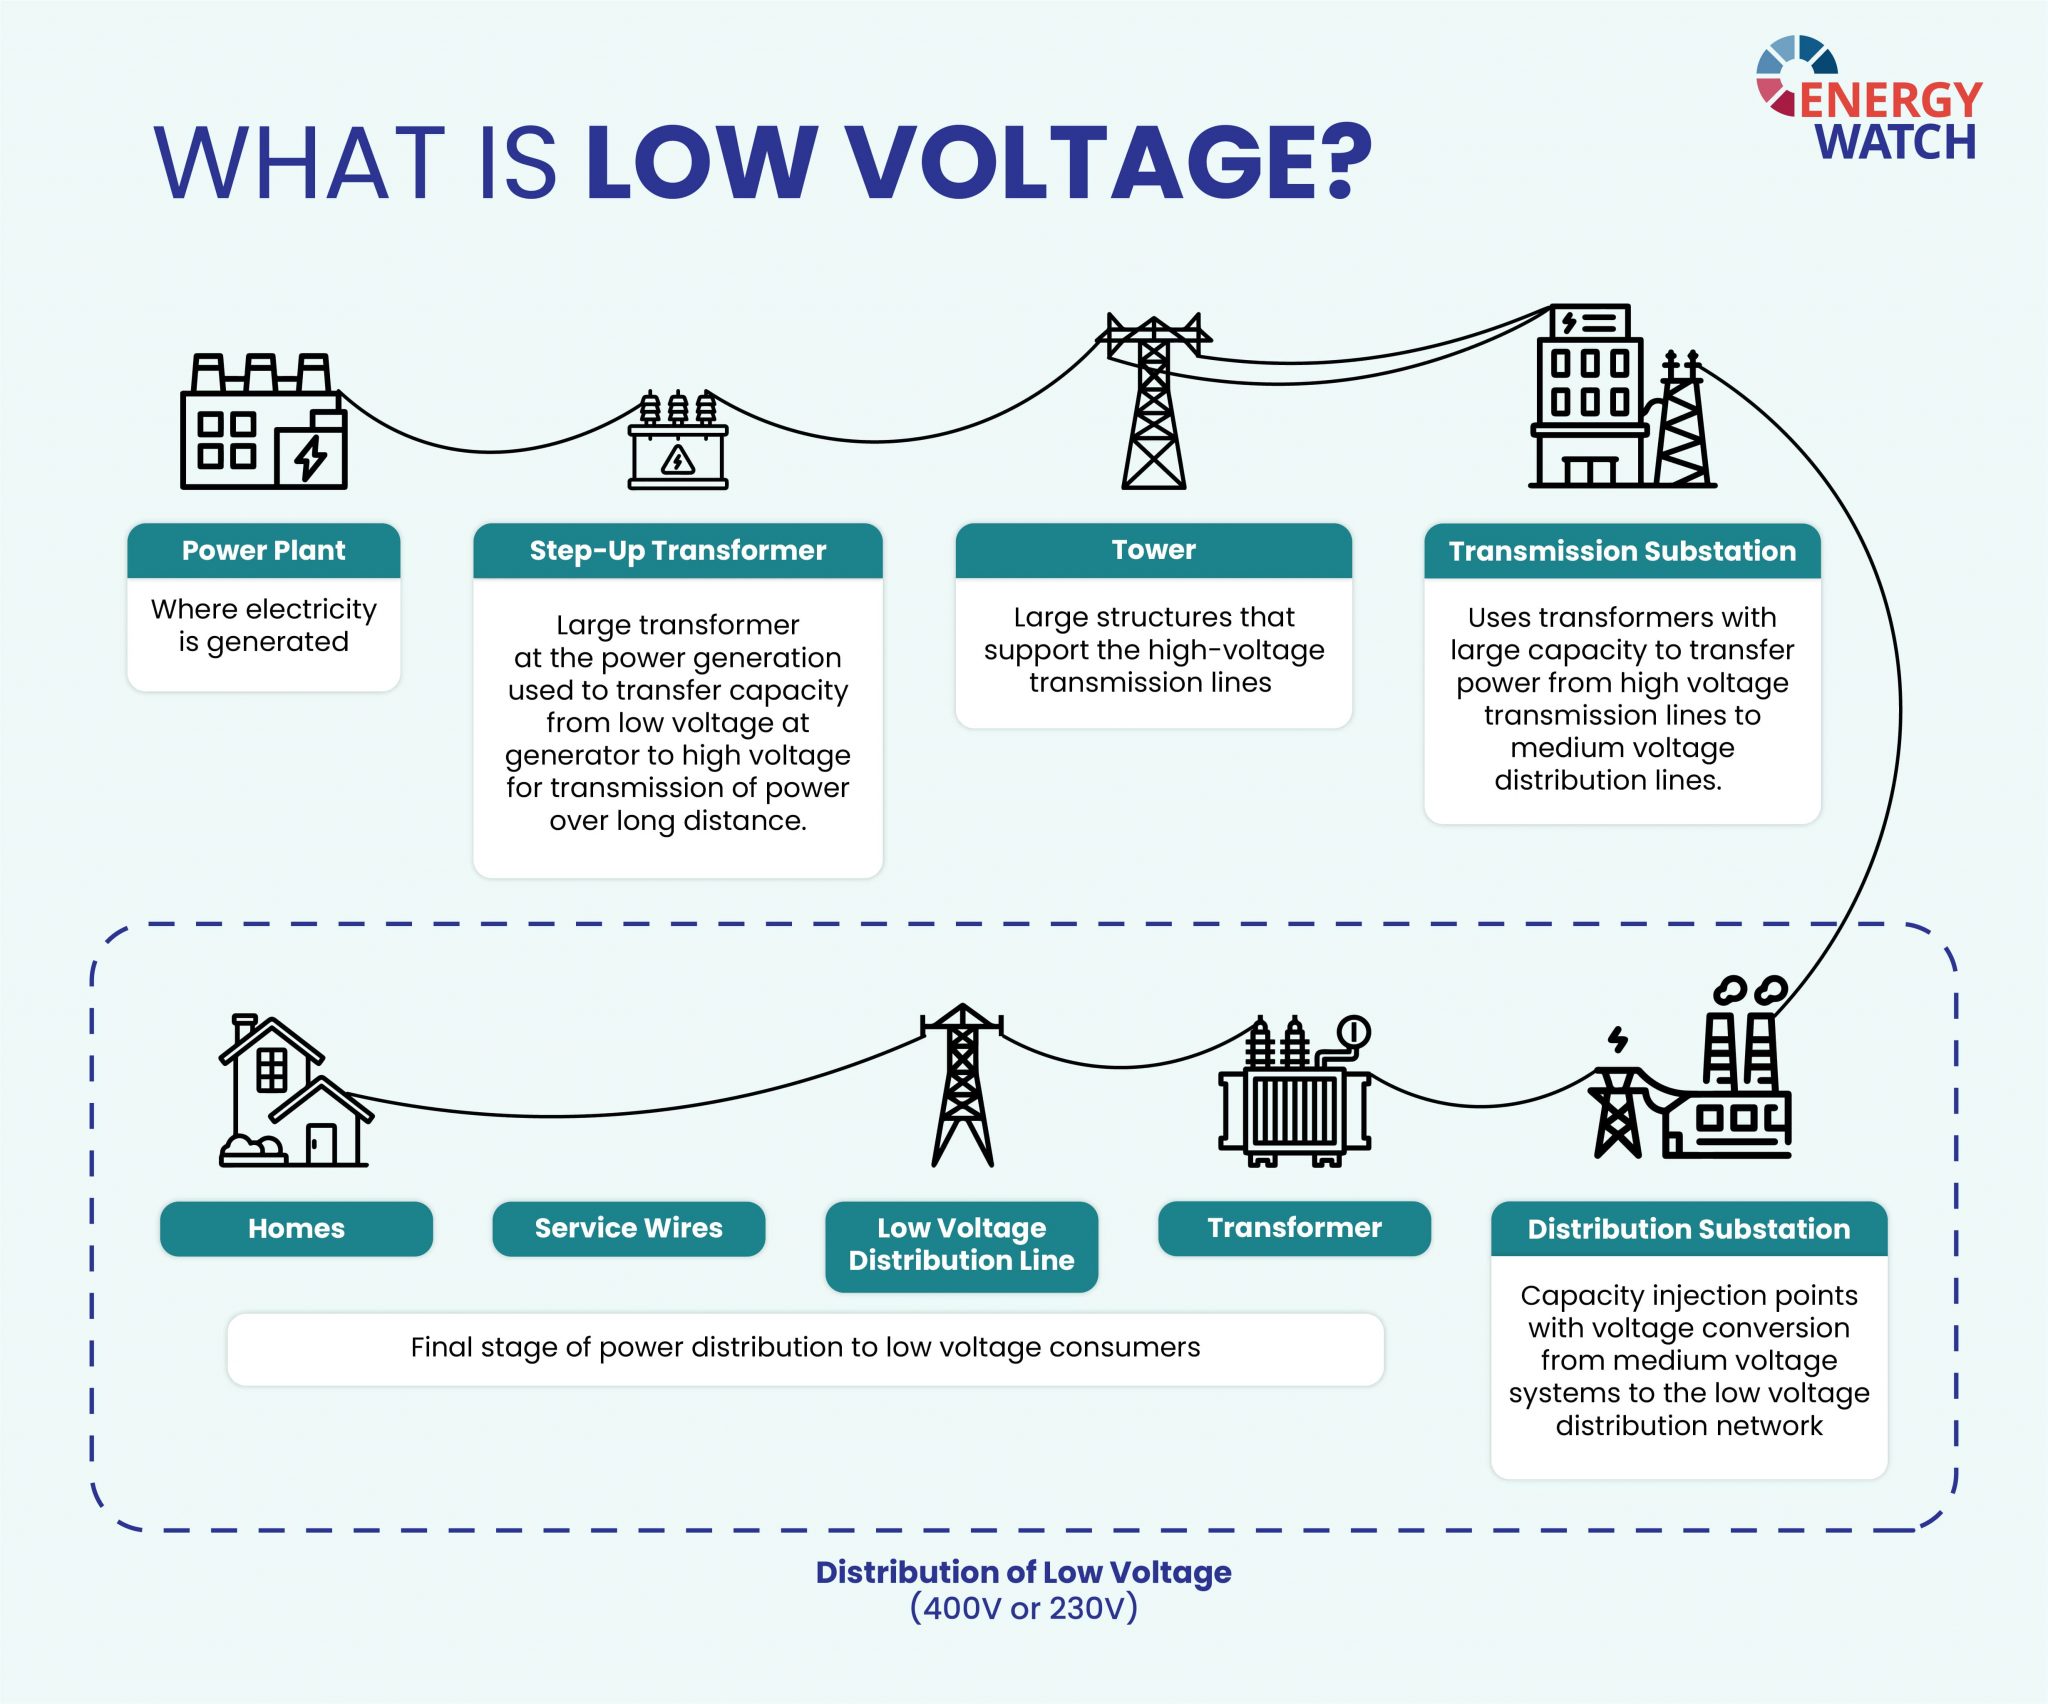 MV/LV electricity distribution infrastructure.